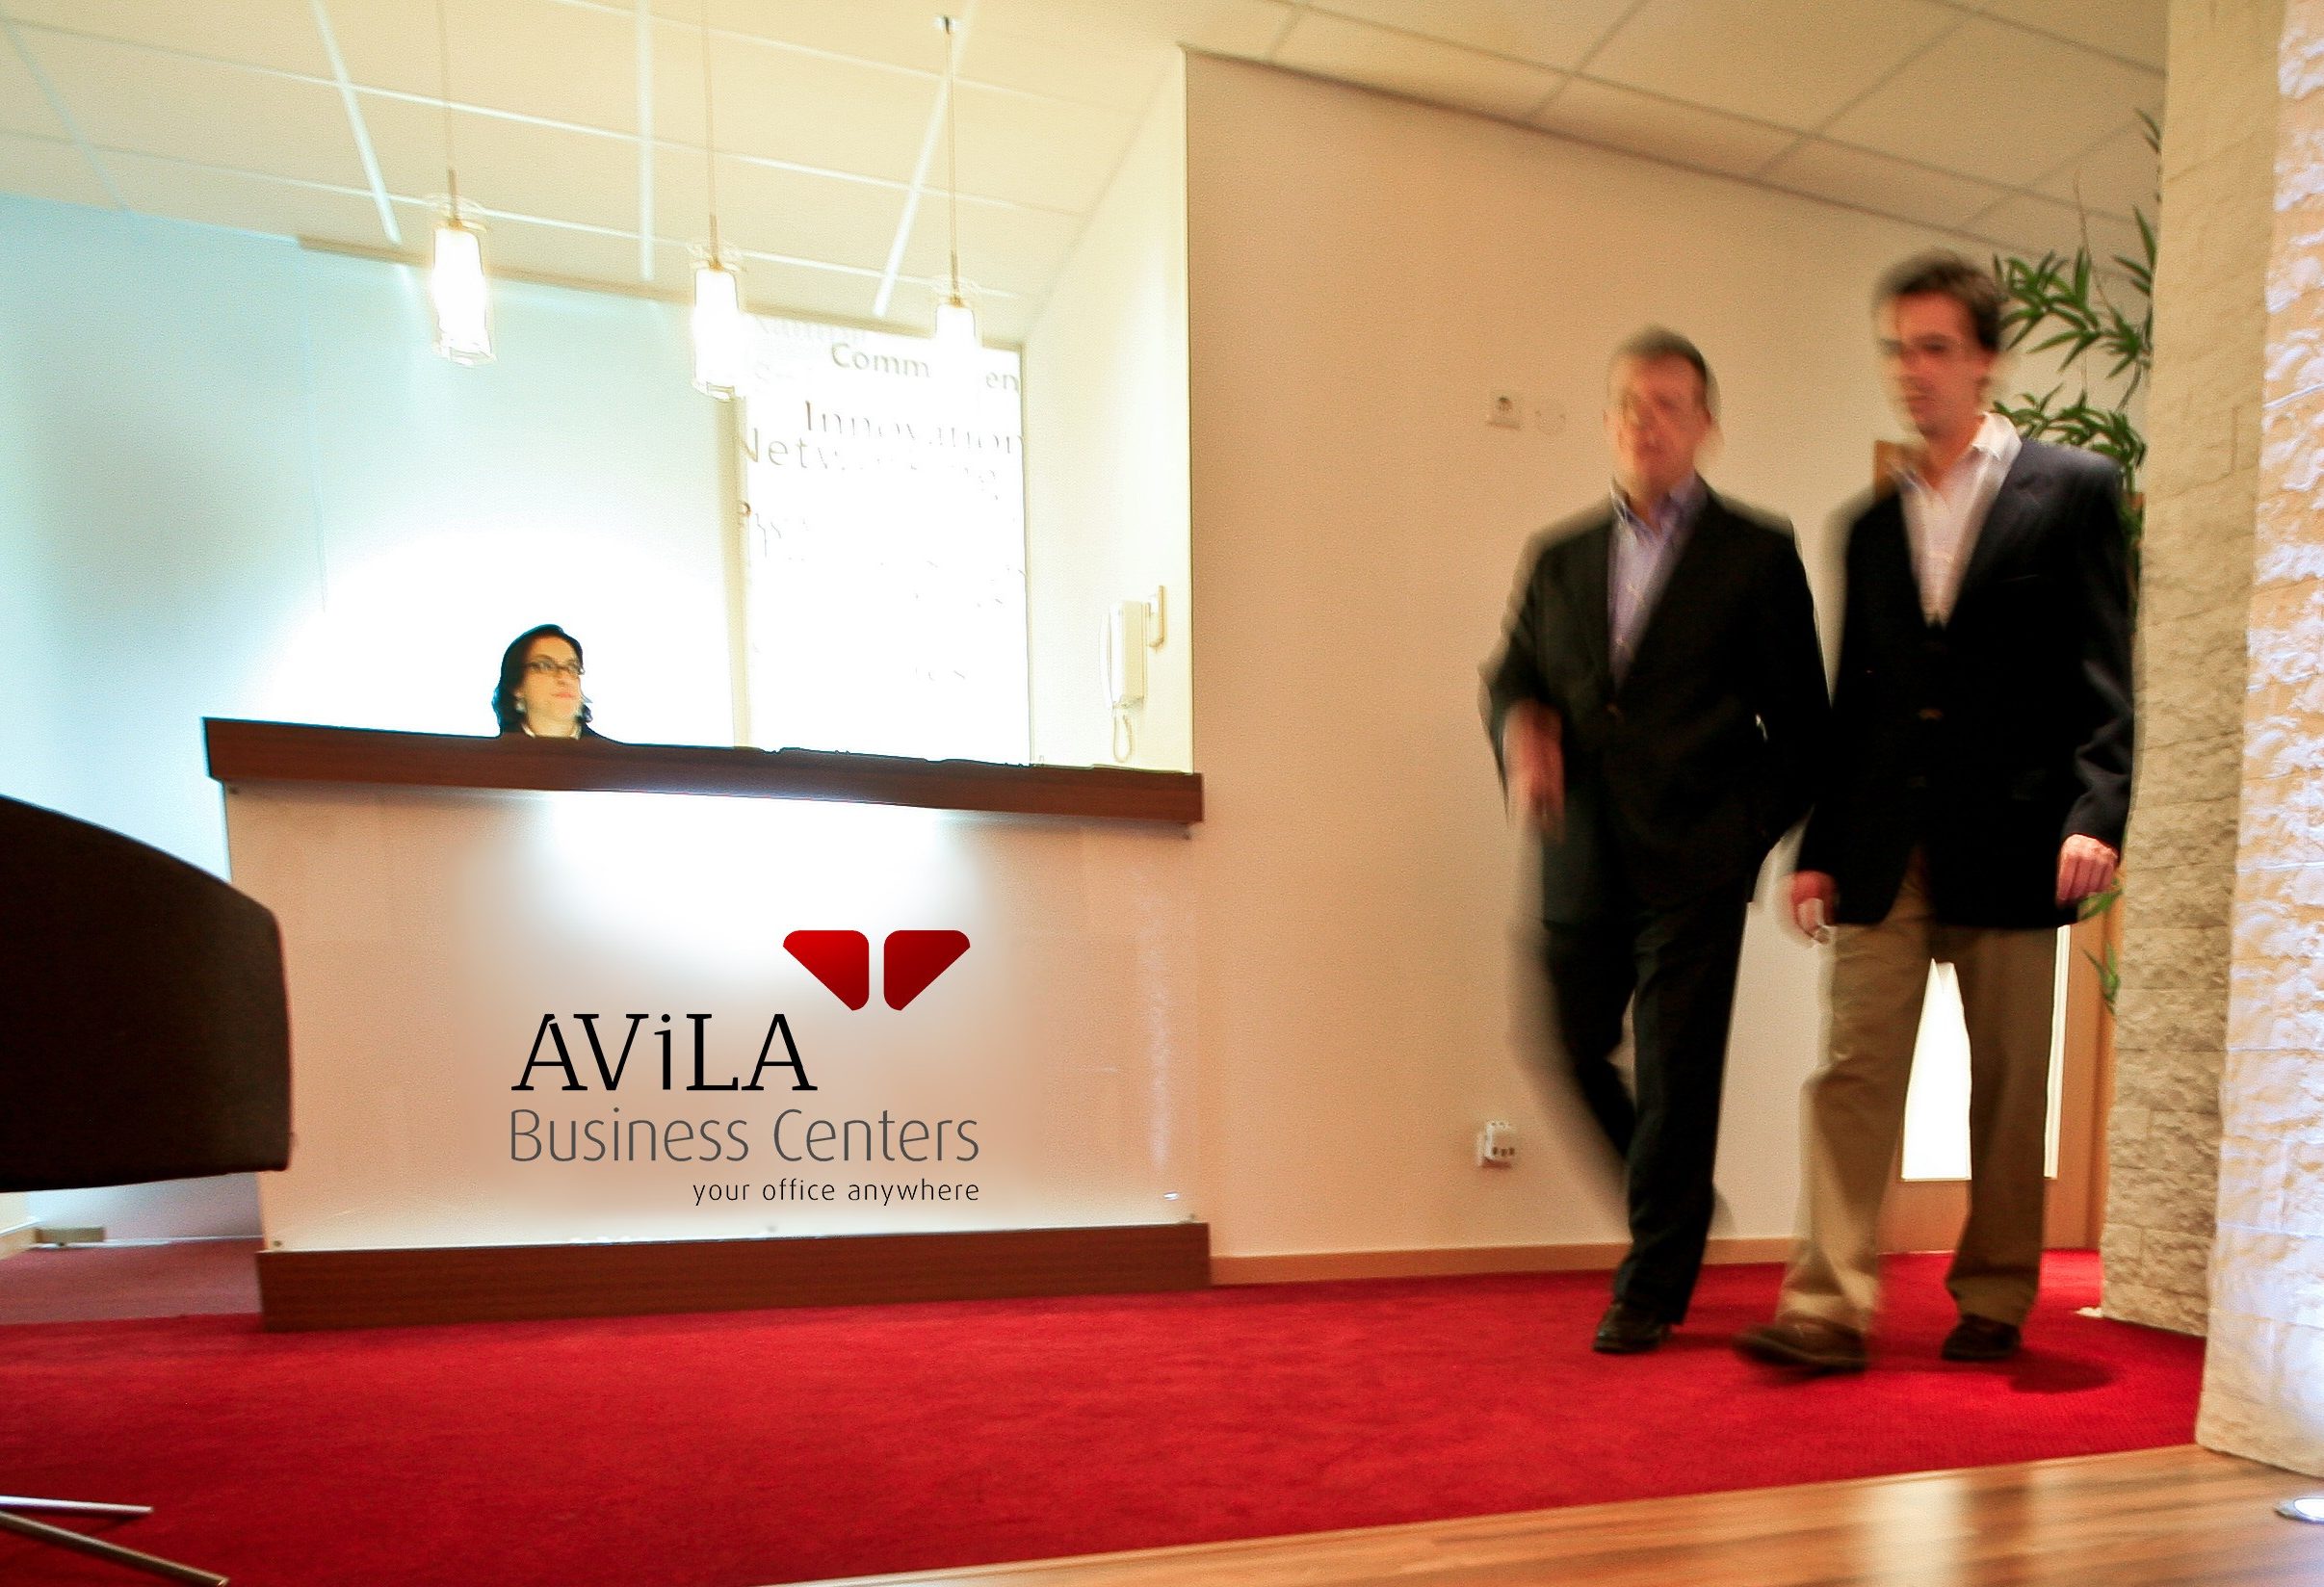 Avila Business Centers Zonas Comuns e